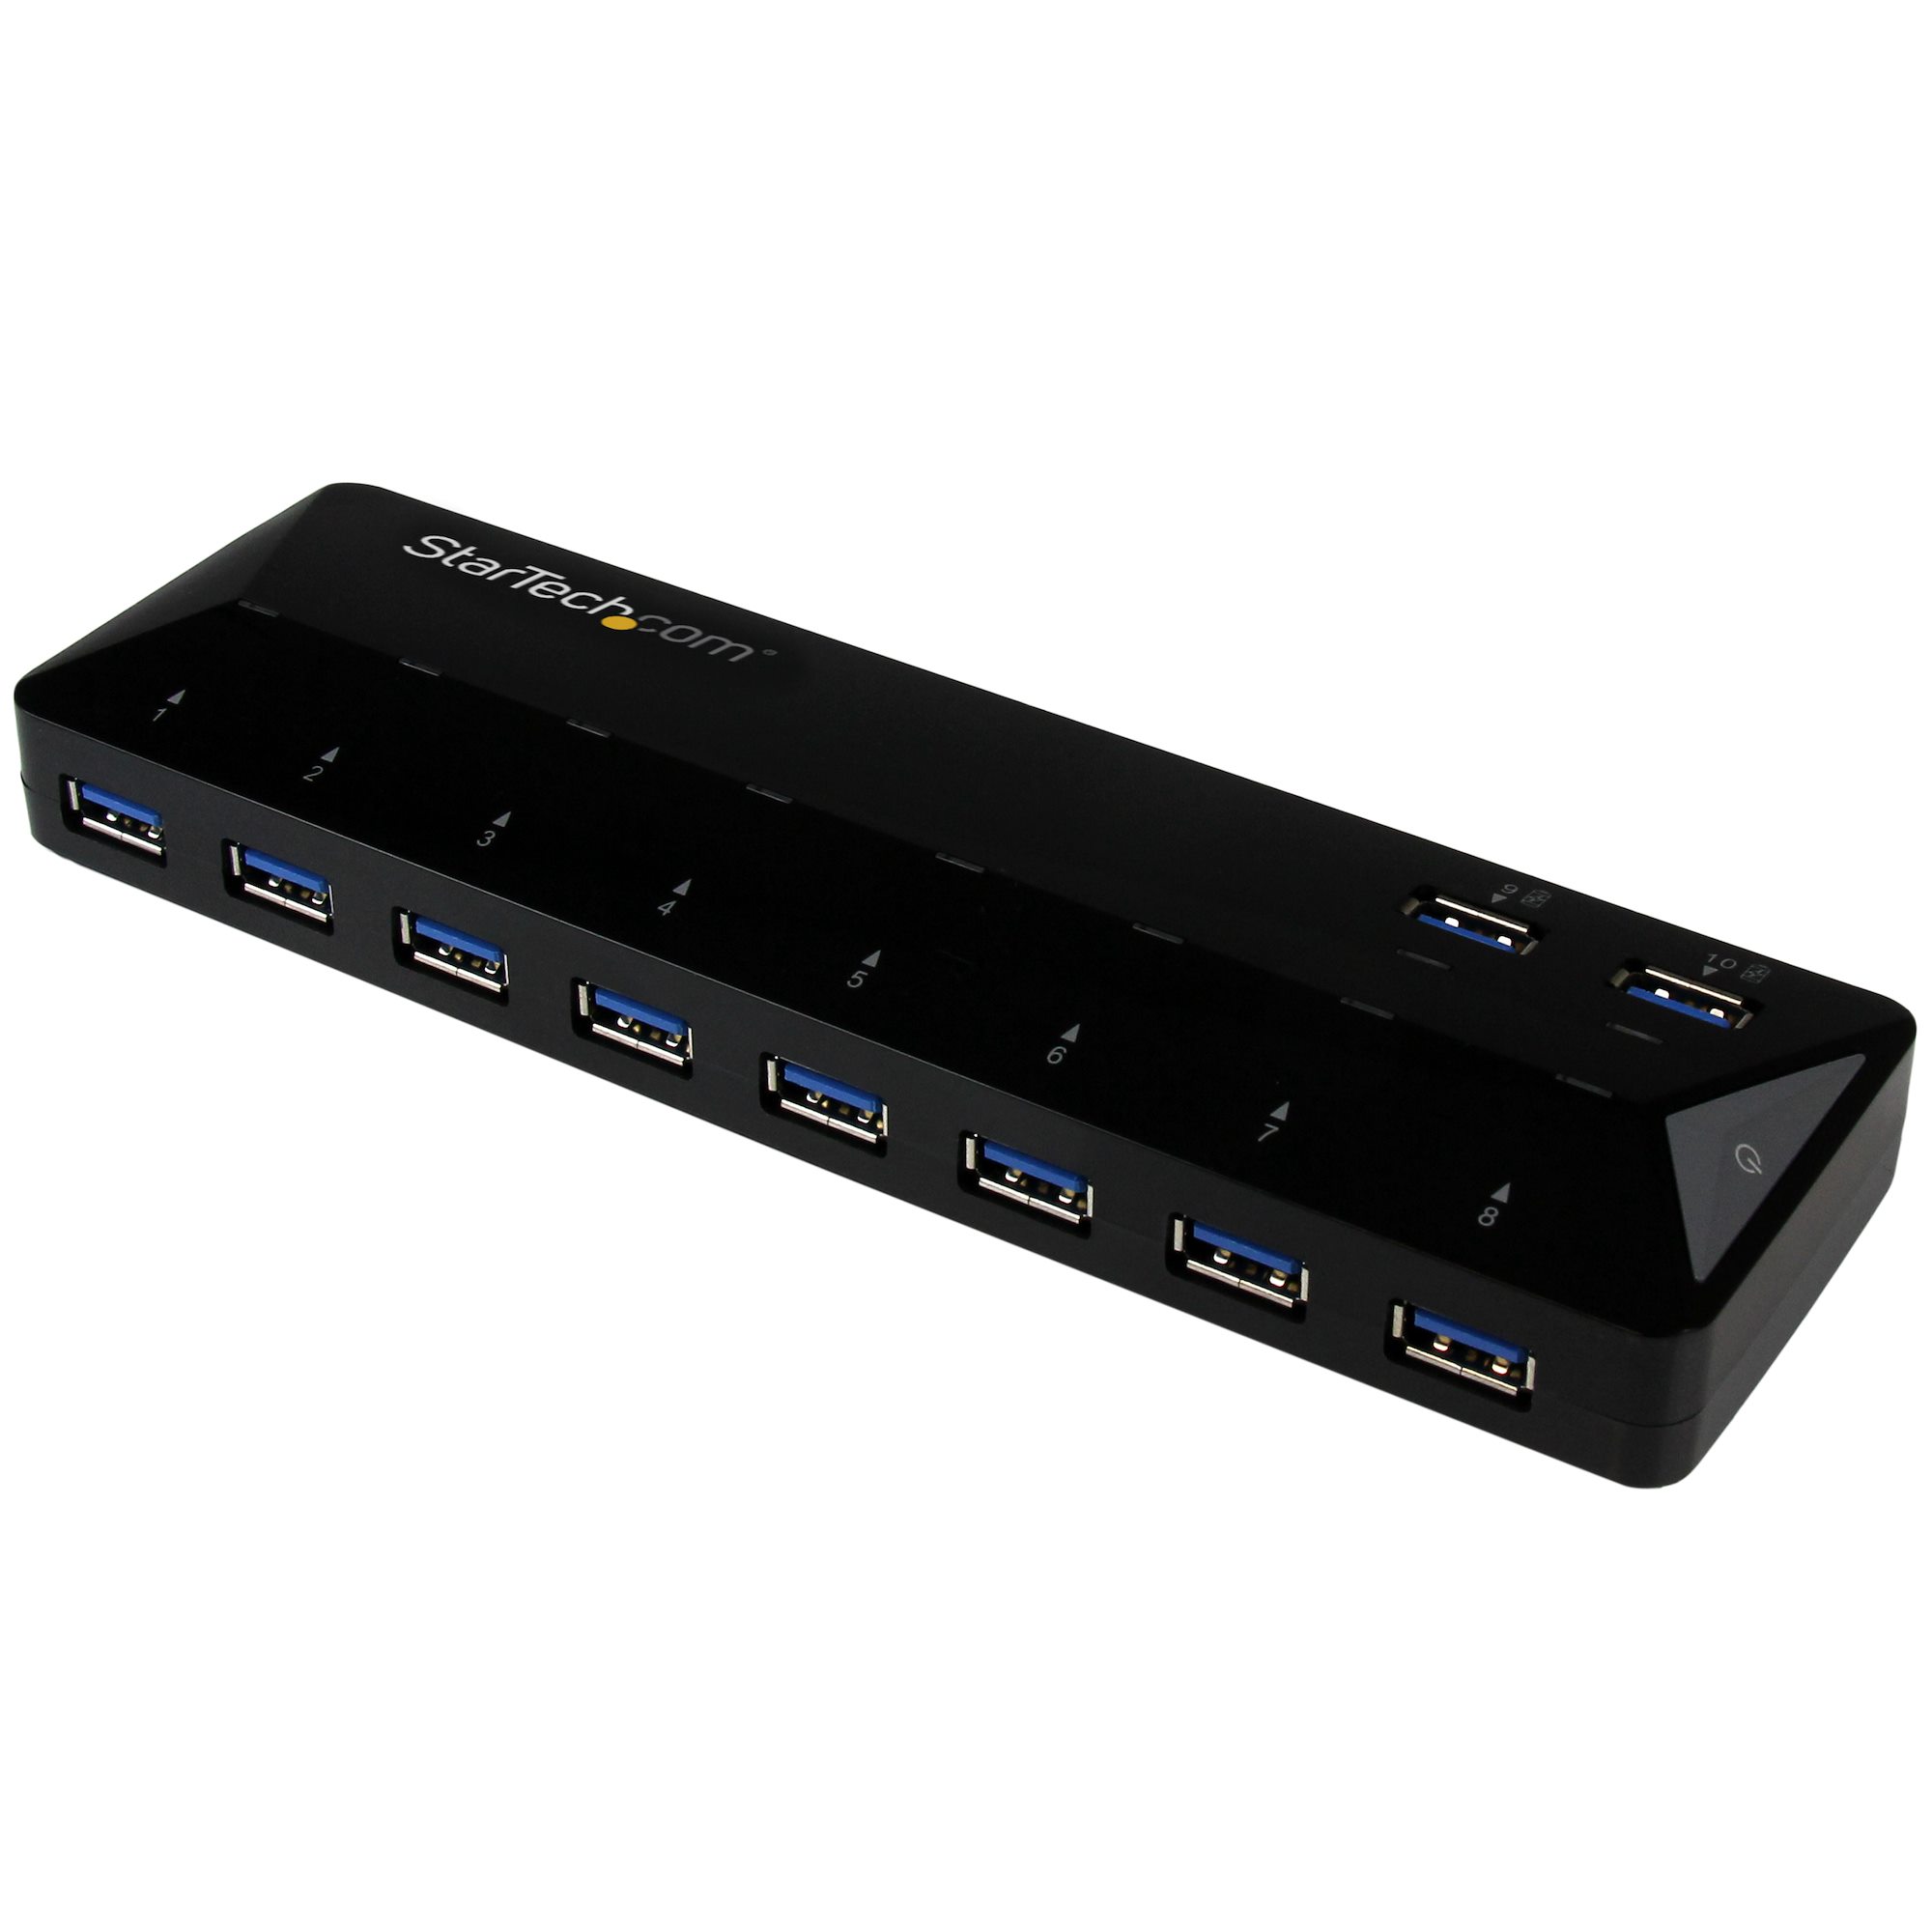 Hub USB alimentado, concentrador de datos USB 3.0 de 13 puertos BYEASY con  10 puertos USB 3.0, 1 puerto de carga rápida tipo C PD, 2 puertos de carga